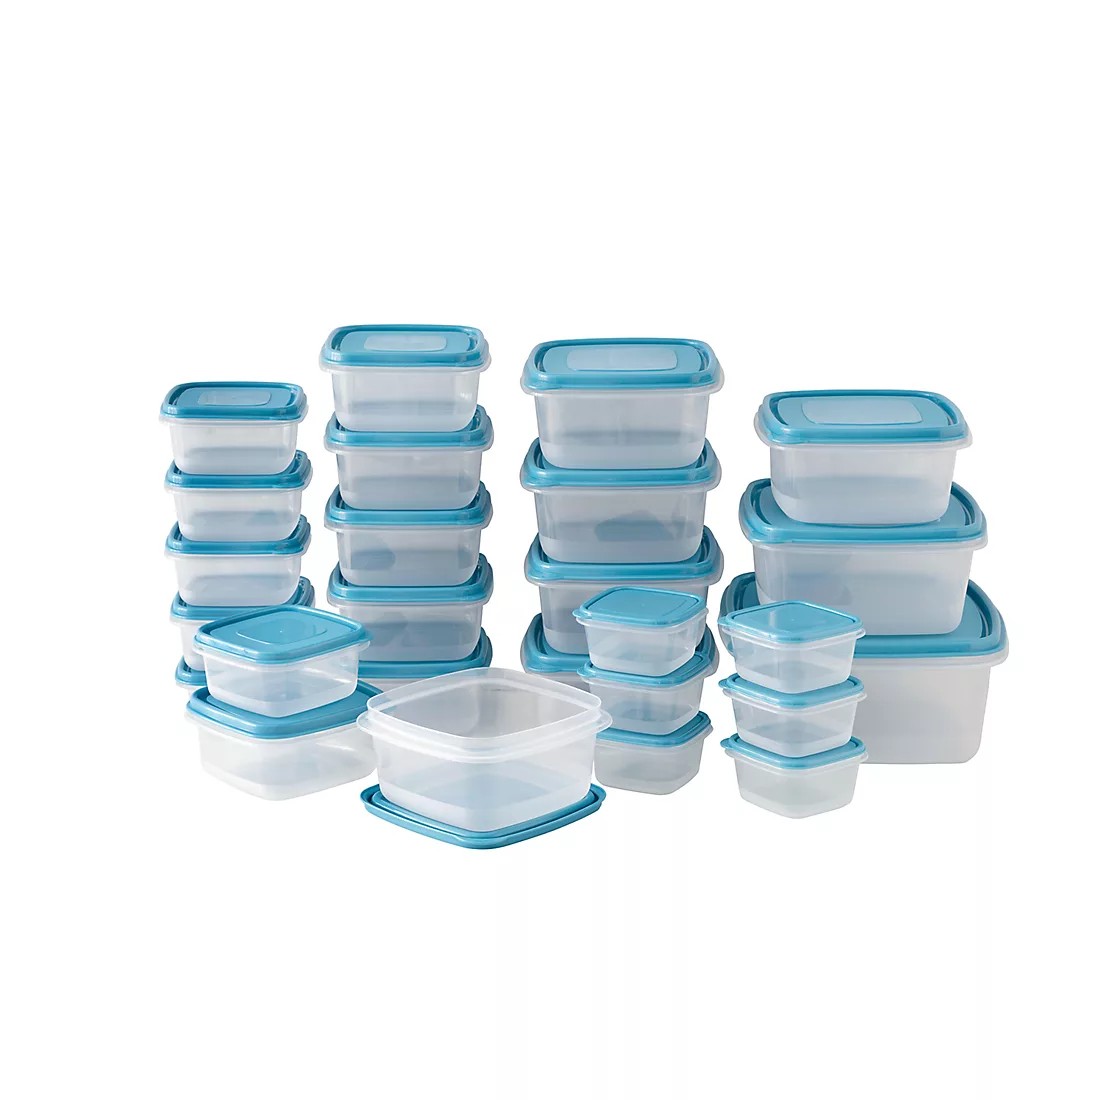 Berkley Jensen 52 Pc. Food Storage Container Set - Blue